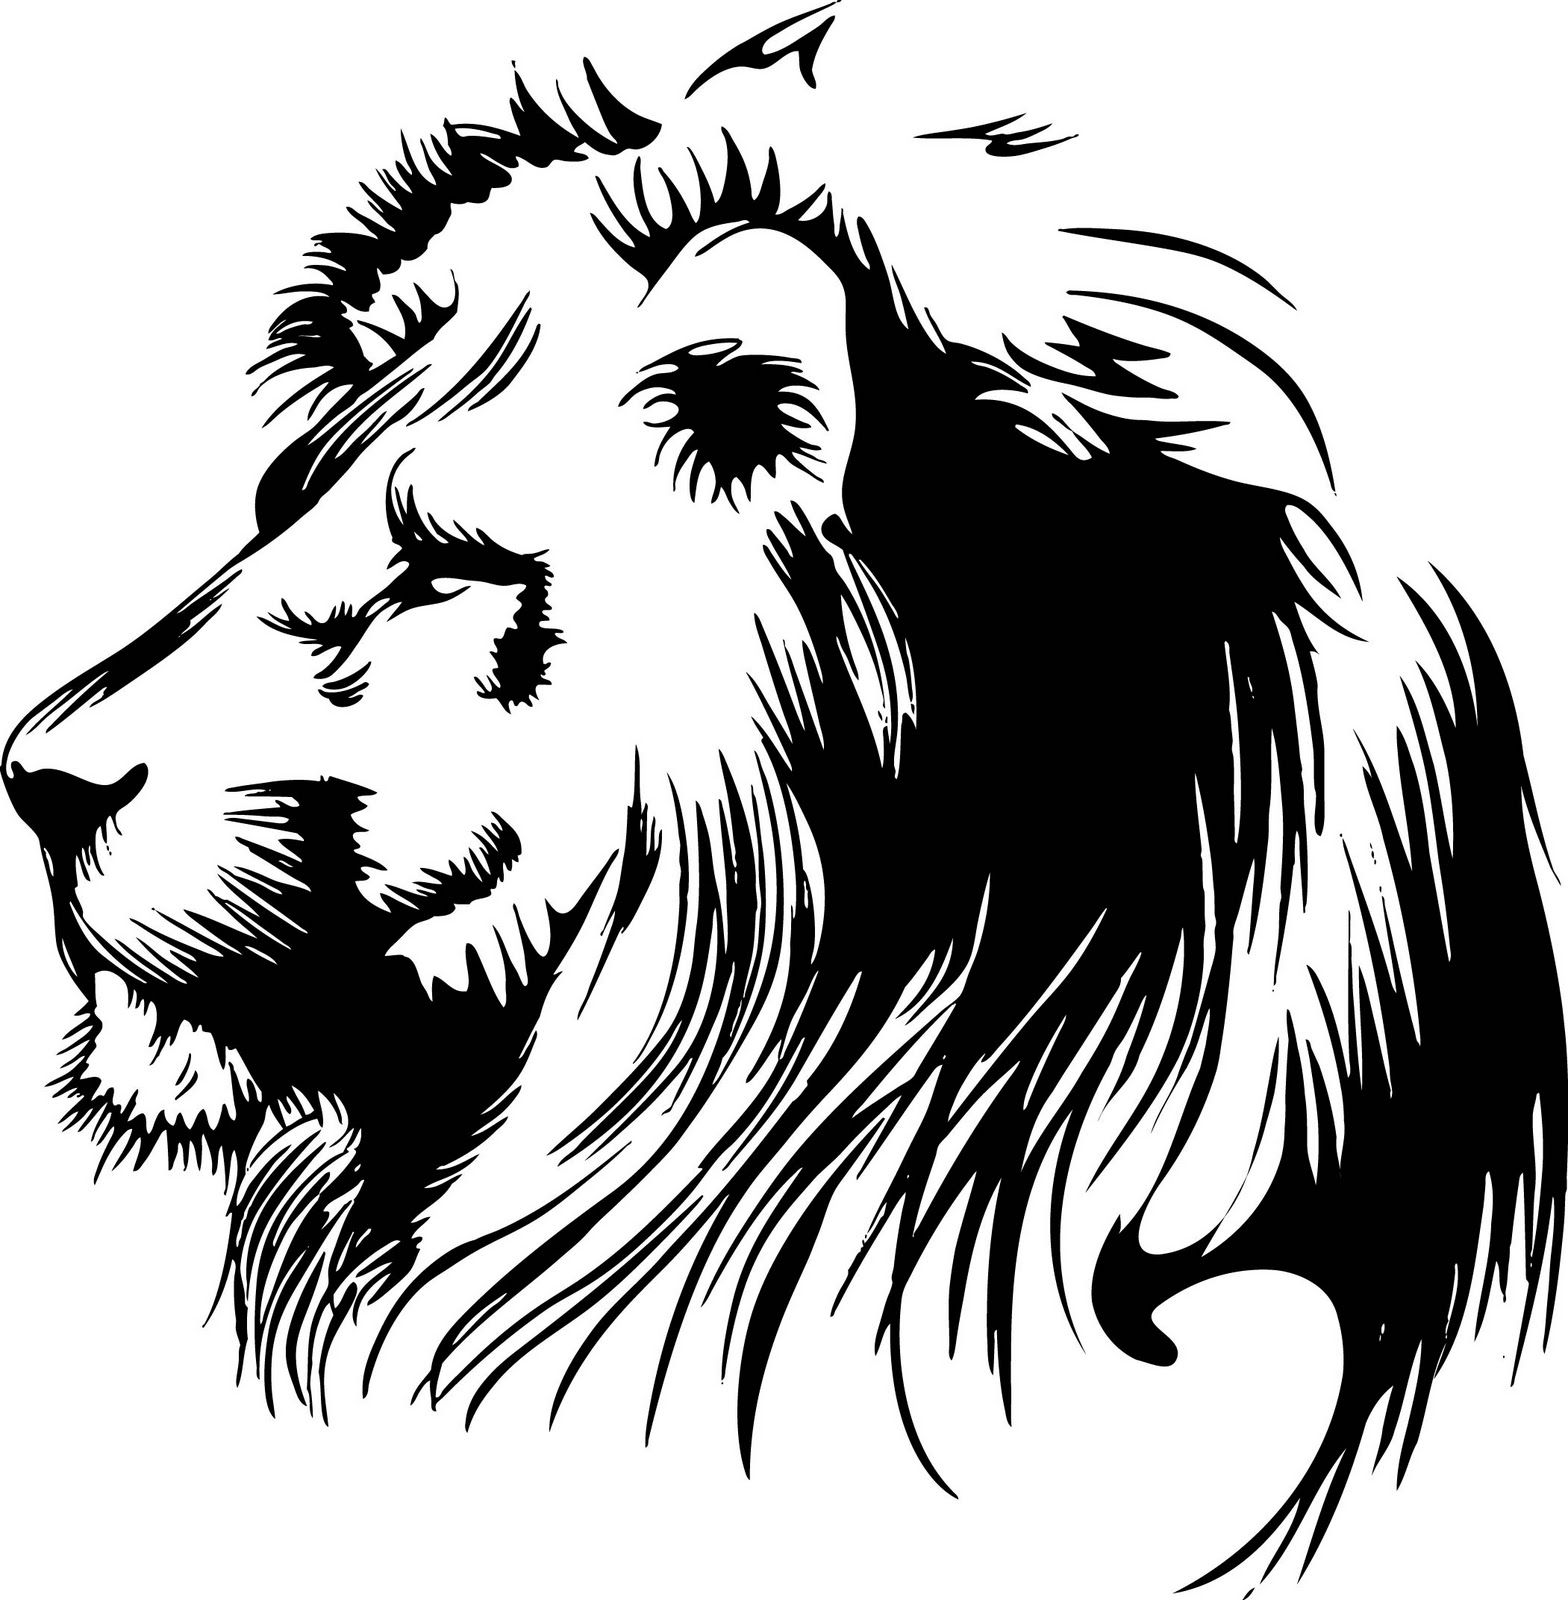 Download Vectorian art: Lion Head Vectorfree download, free download vector, CDR, EPS, AI